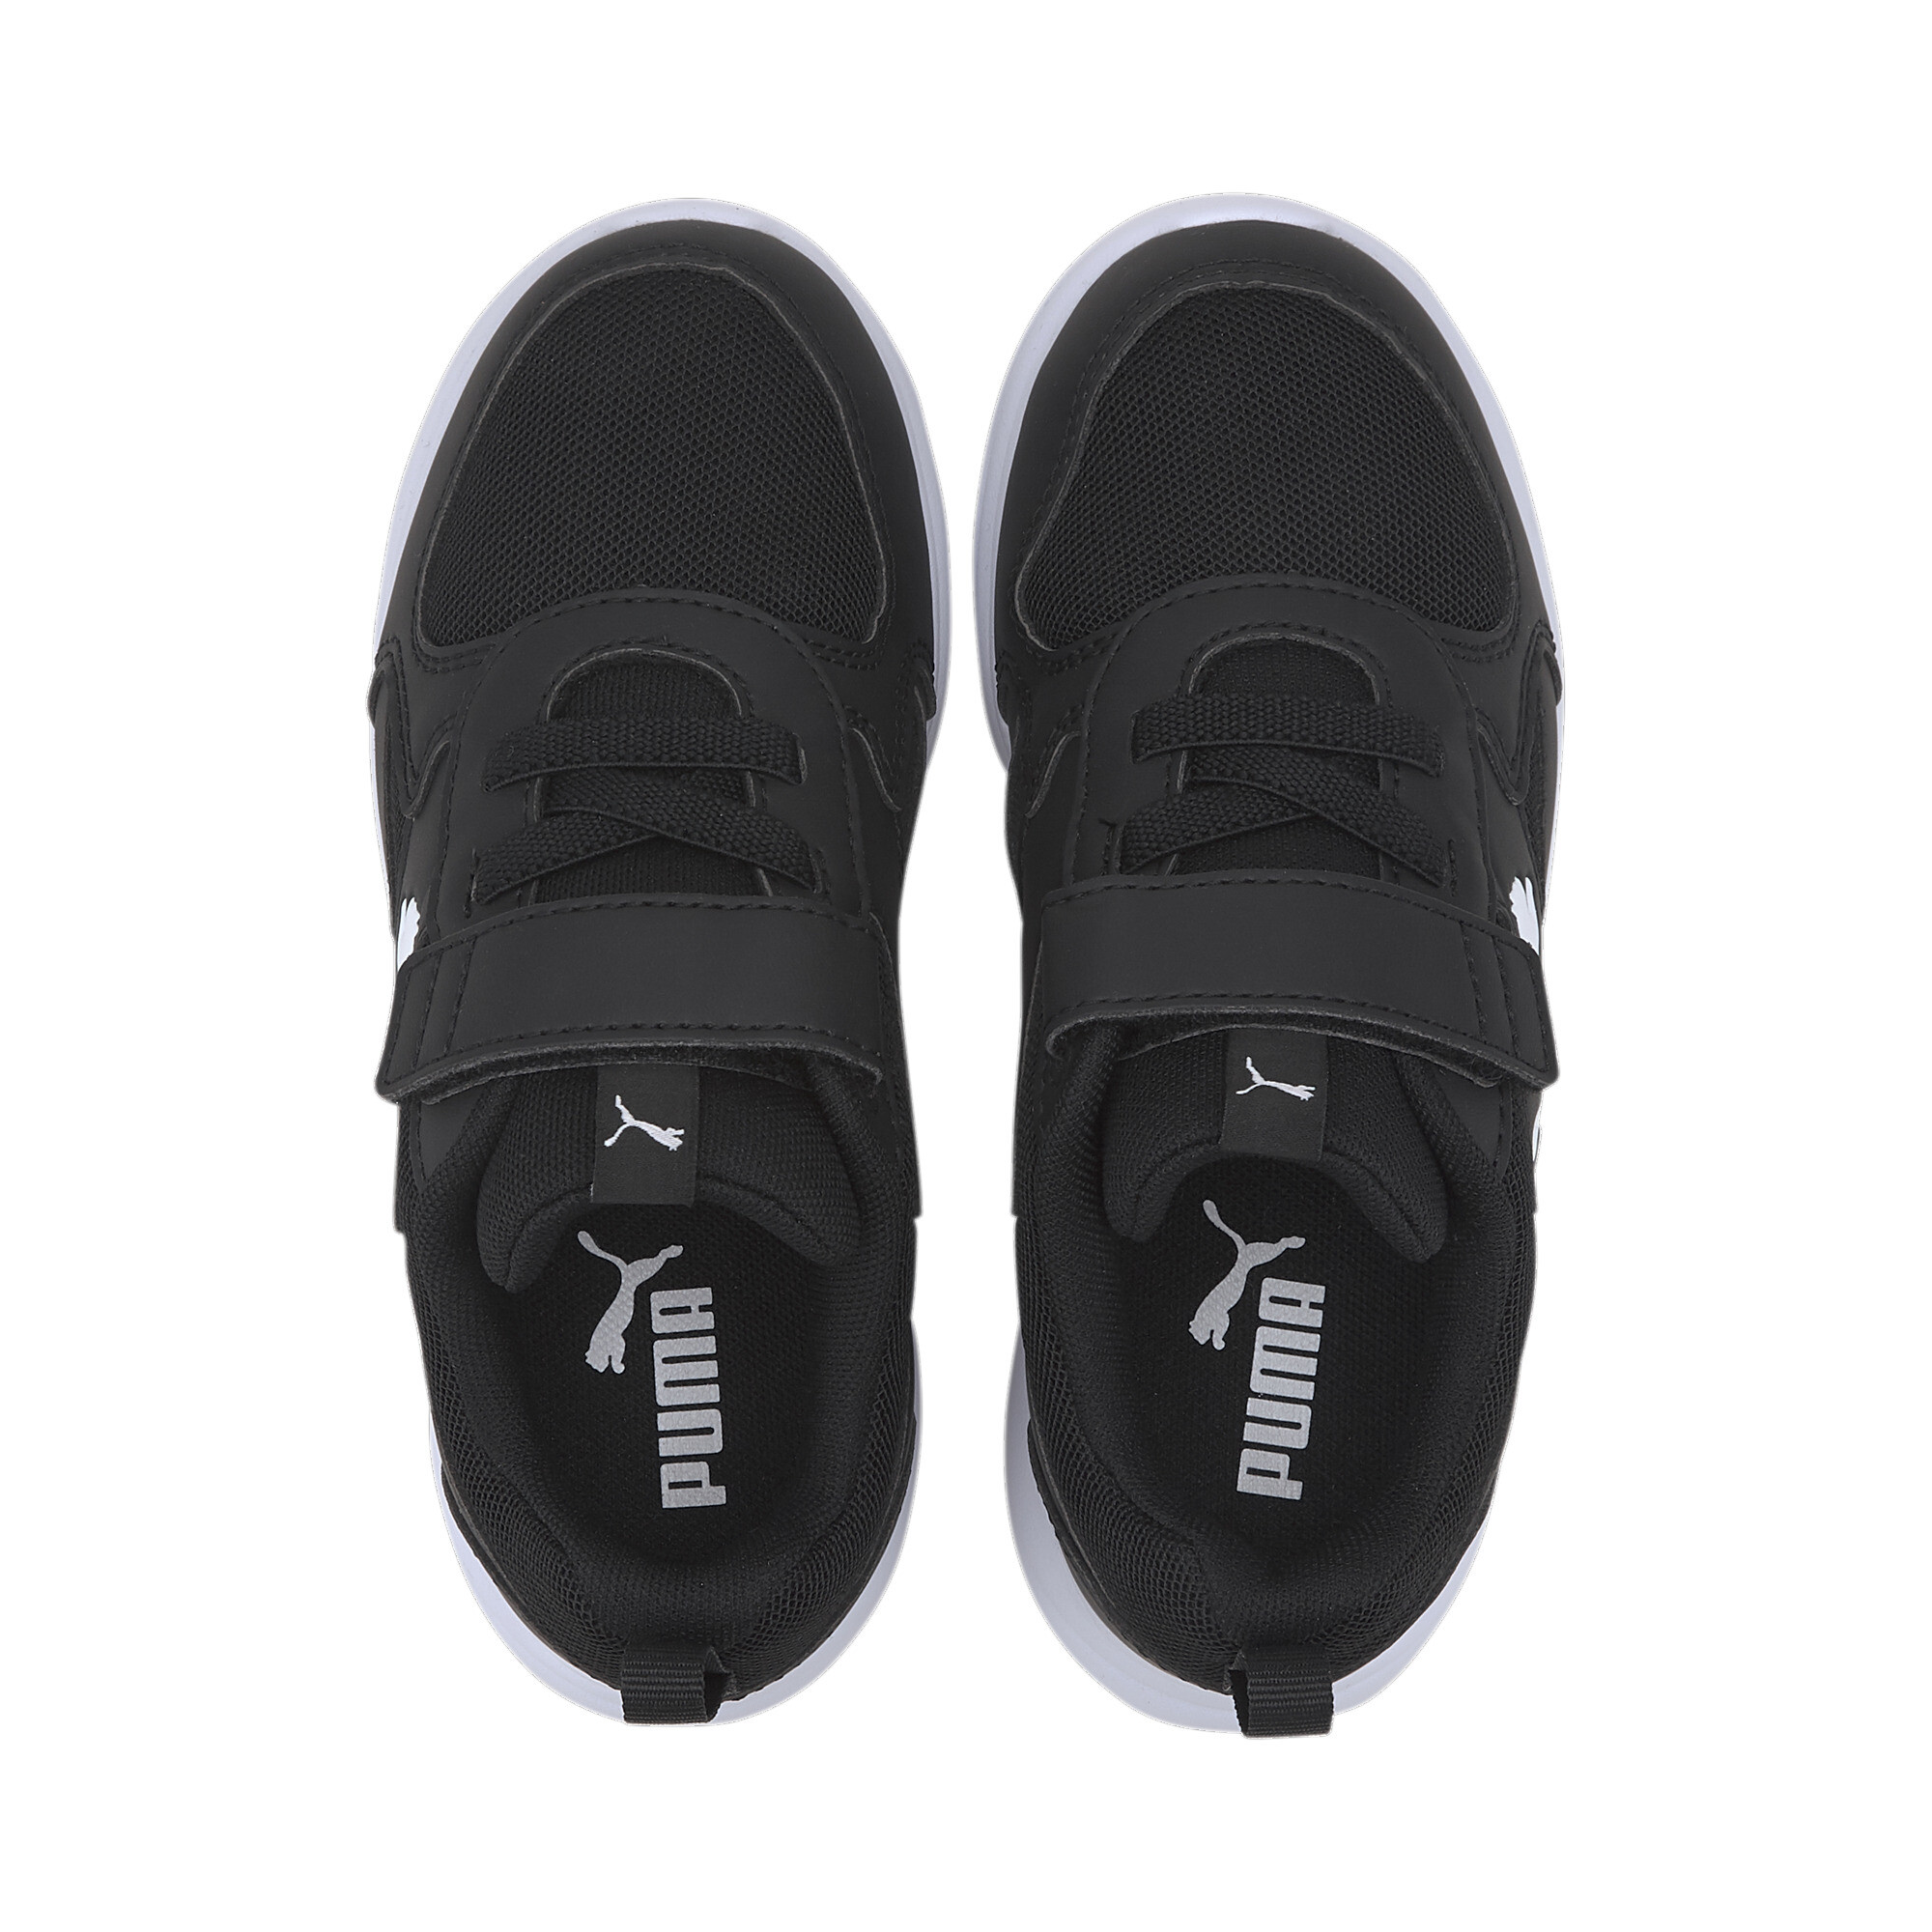 Kids' PUMA Fun Racer Sneakers In Black, Size EU 32